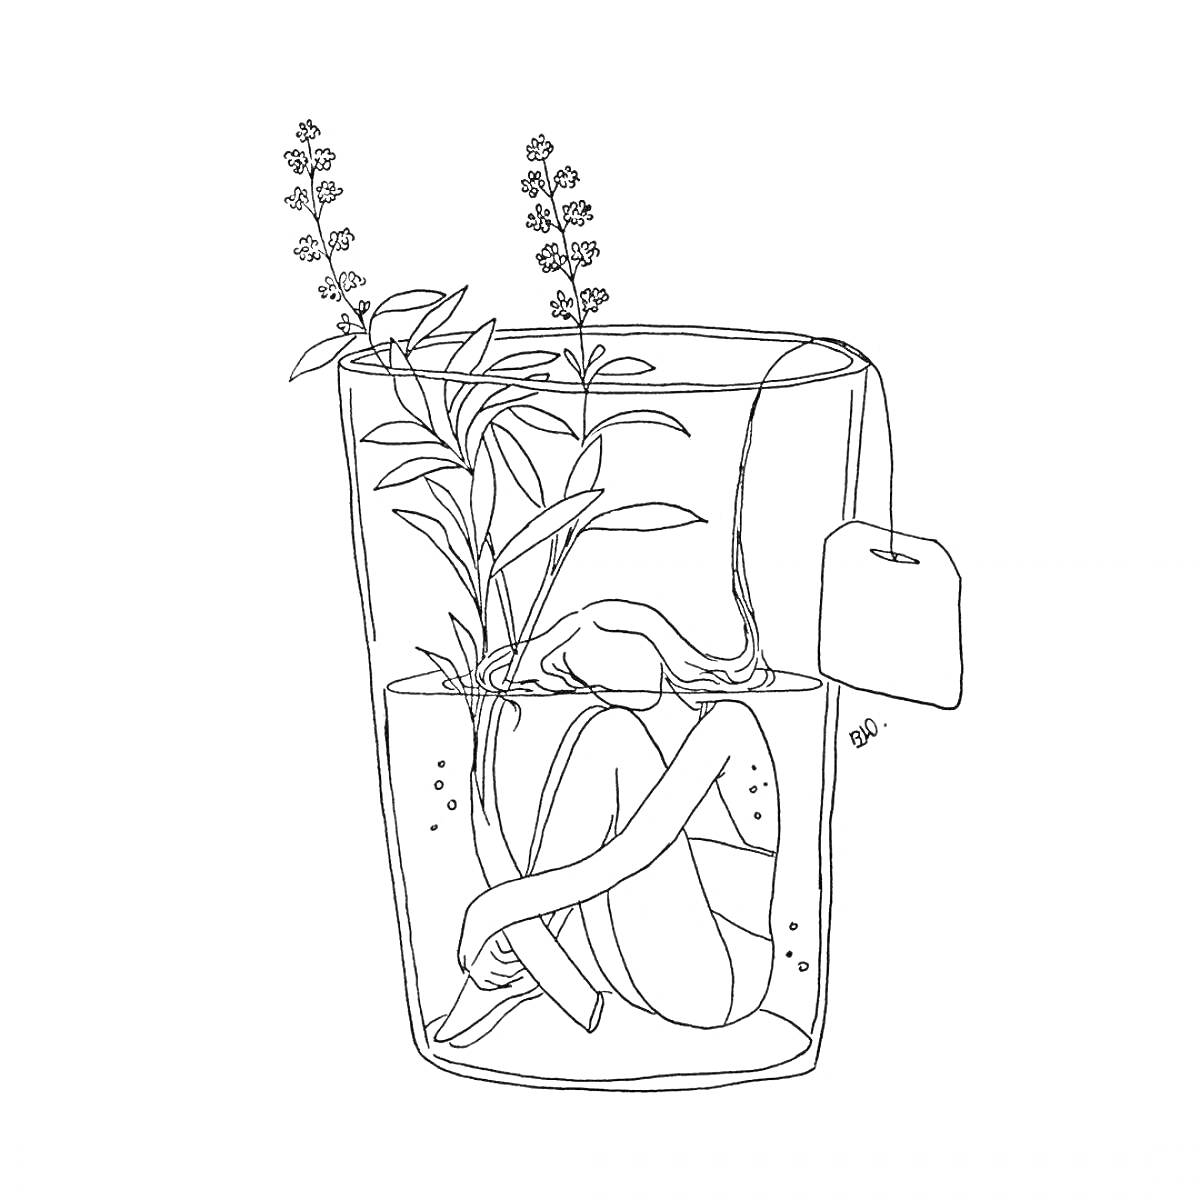 Человек в чашке с растениями и чайным пакетиком